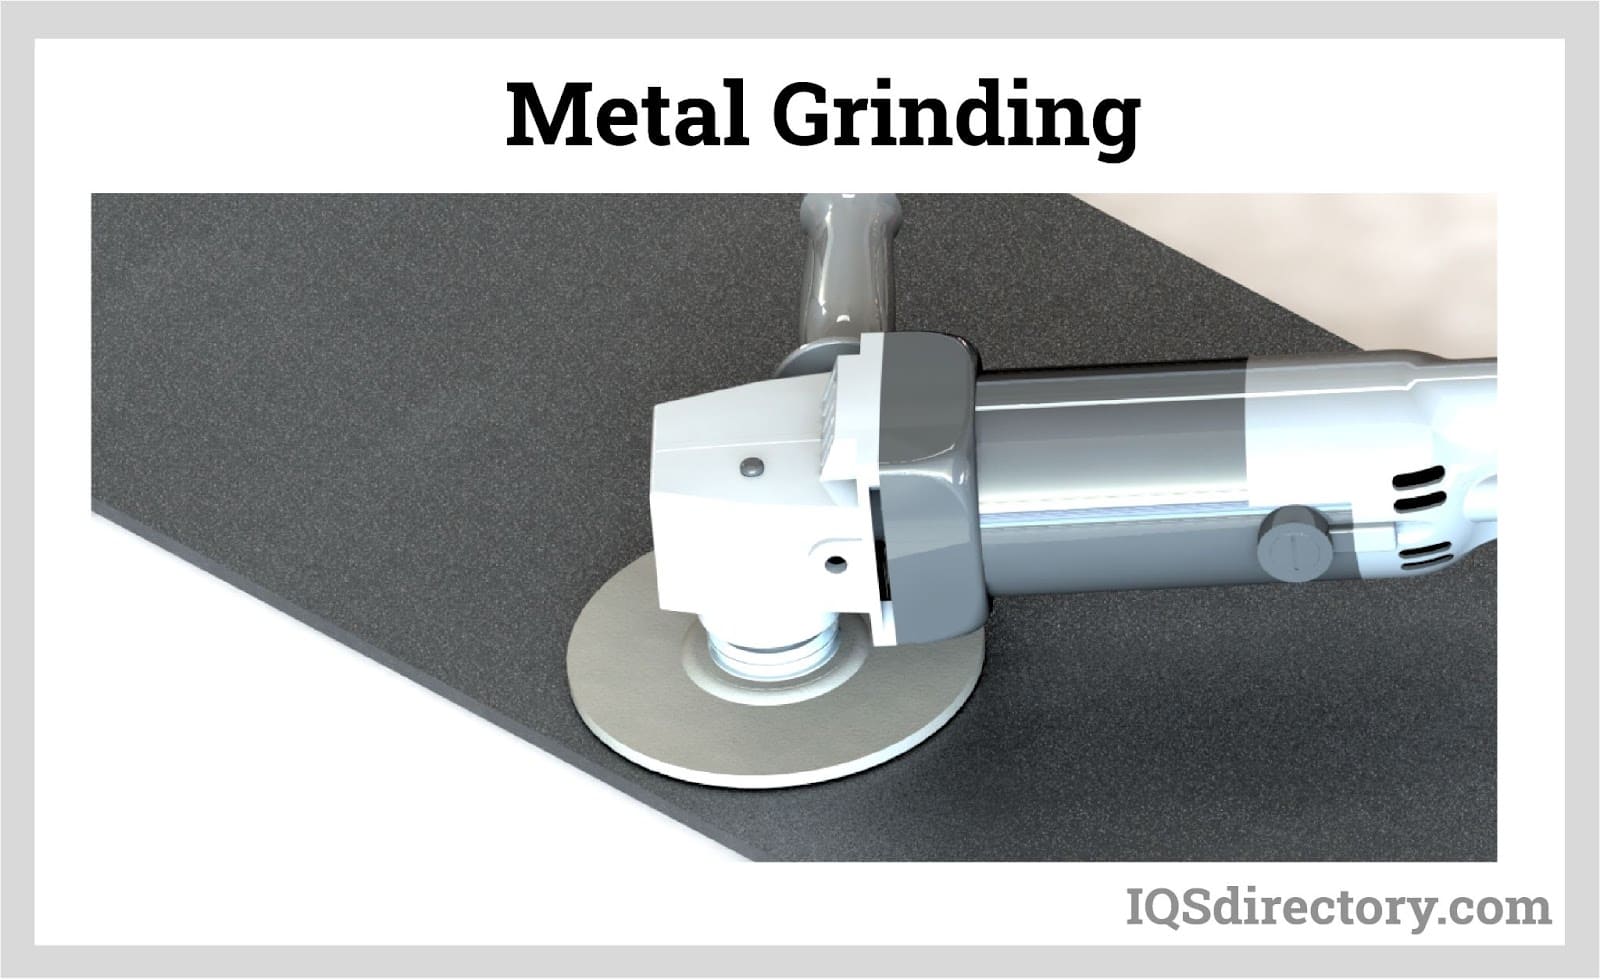 Metal Grinding